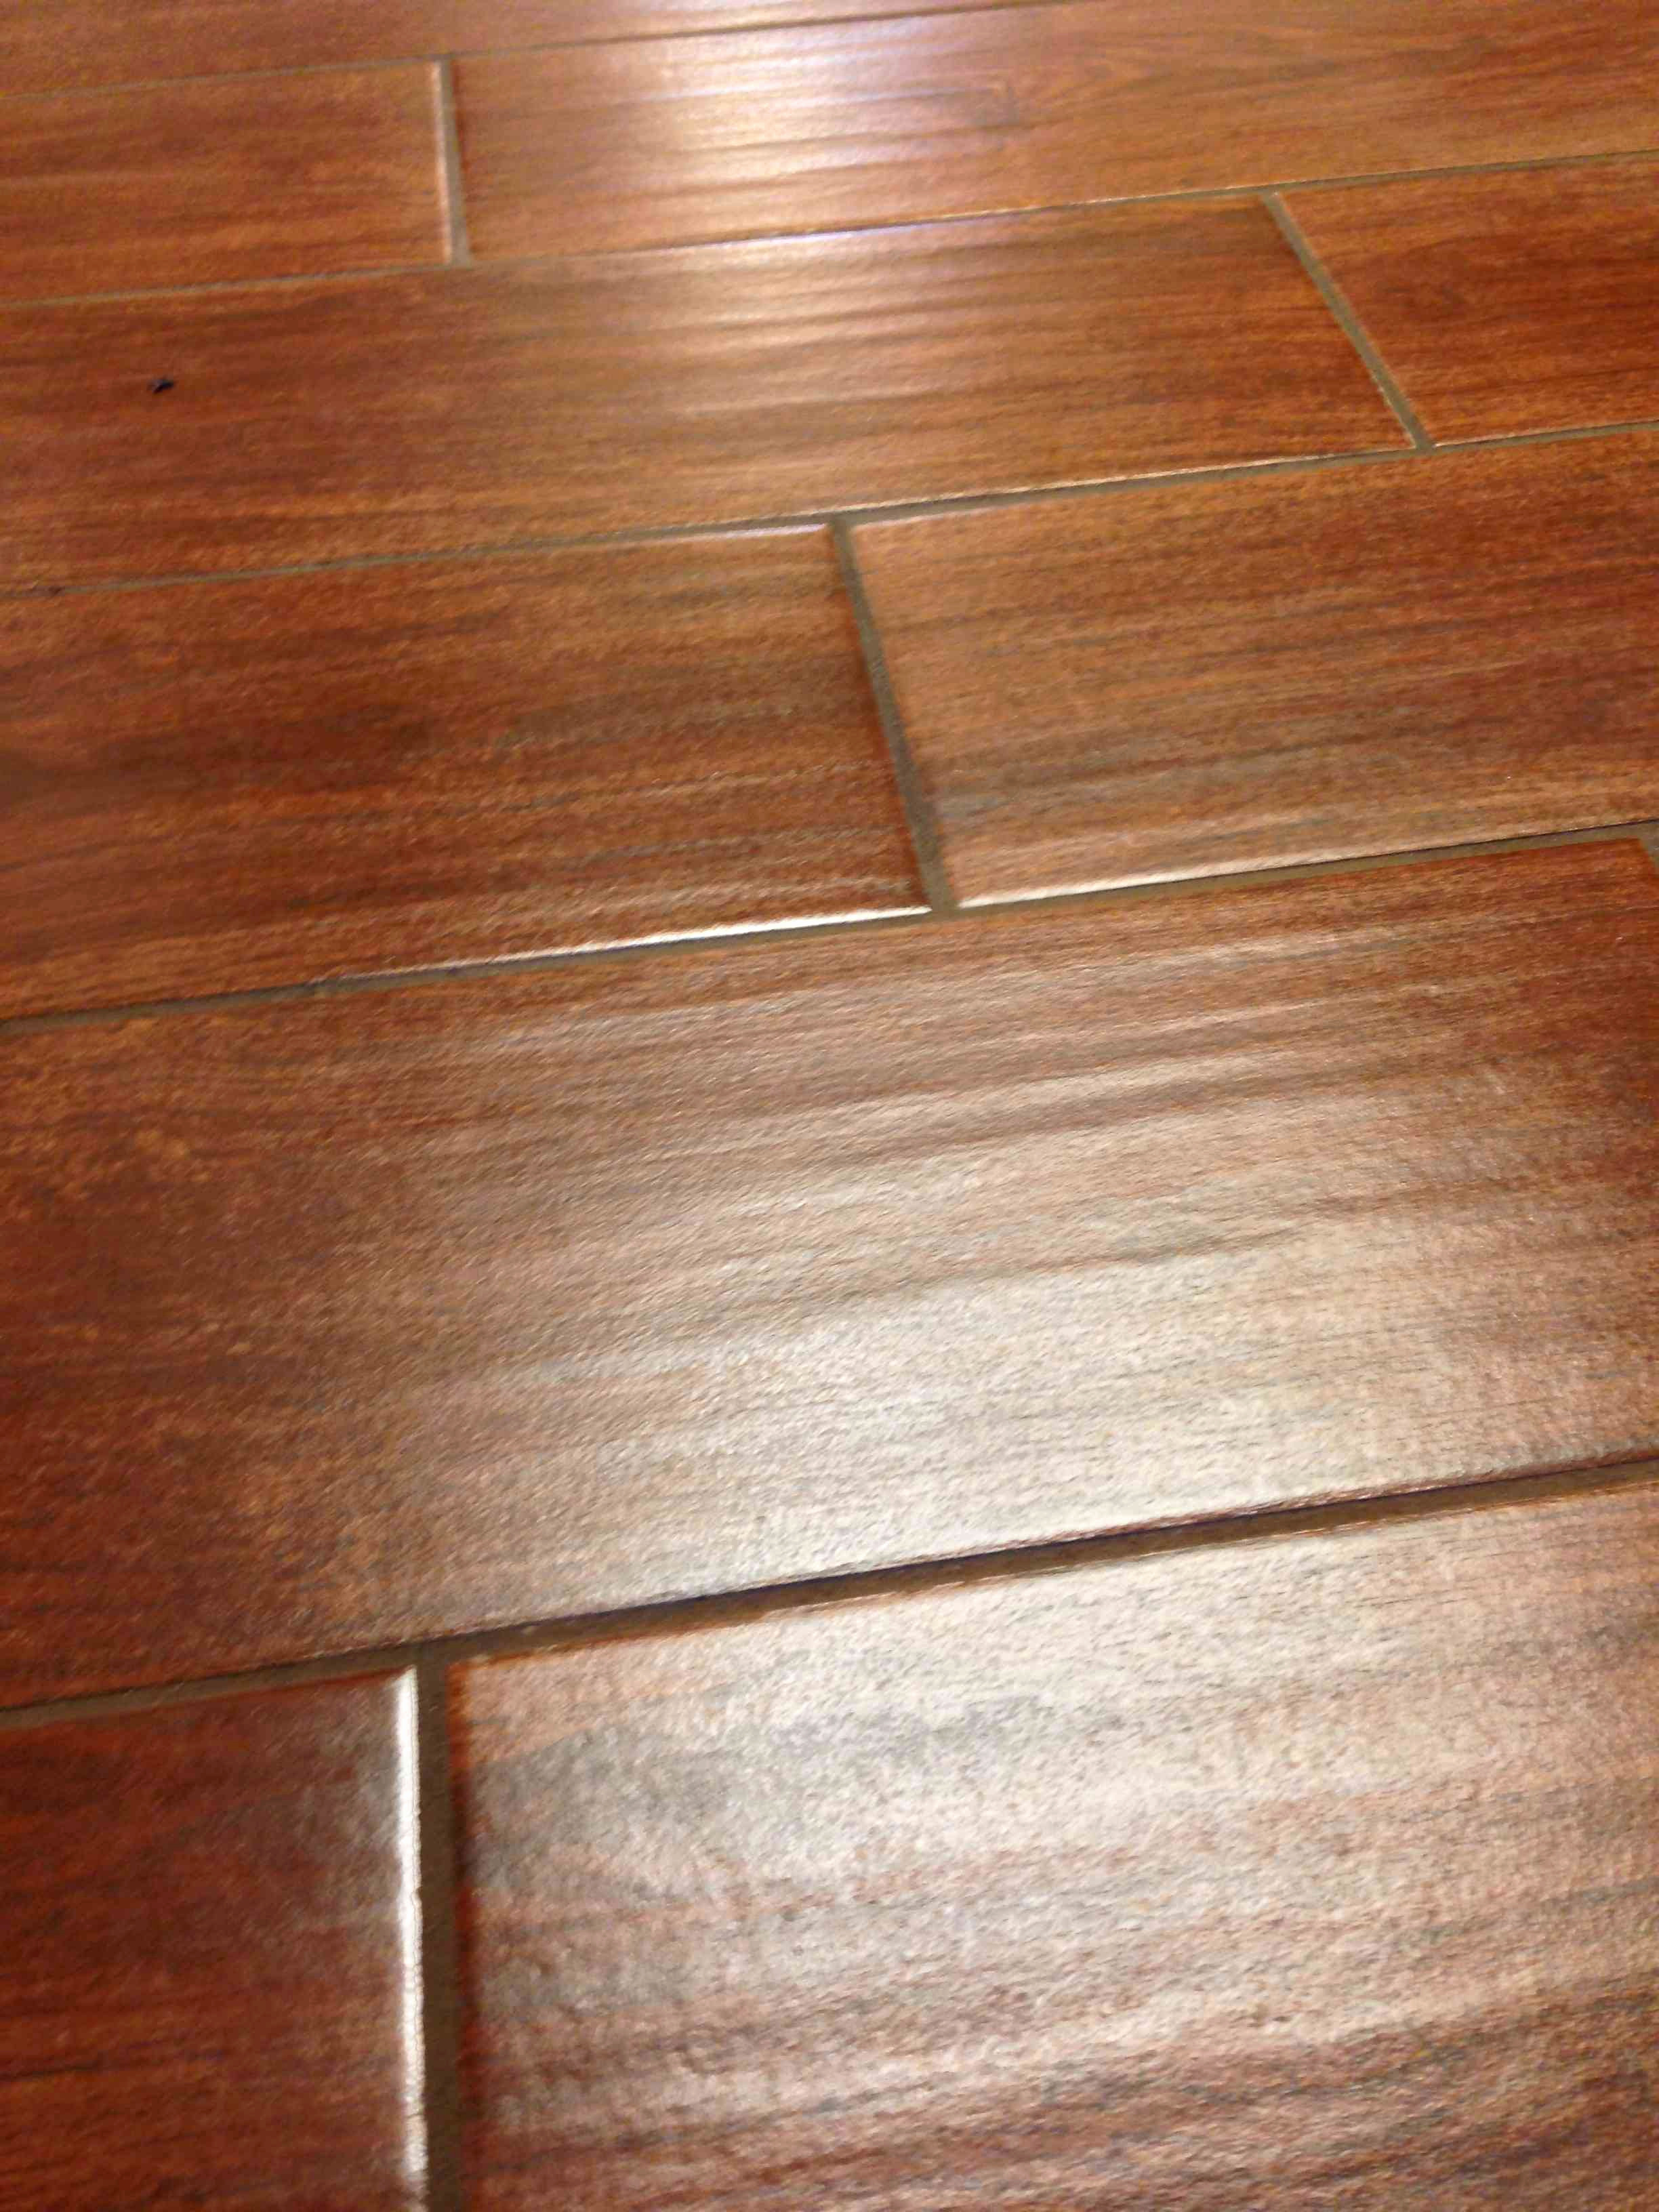 20 Wonderful Plank Hardwood Flooring Canada 2024 free download plank hardwood flooring canada of floor tile that looks like wood planks floor plan ideas in harwood flooring best tile that looks like hardwood floors elegant i pinimg 736x 0d 7b